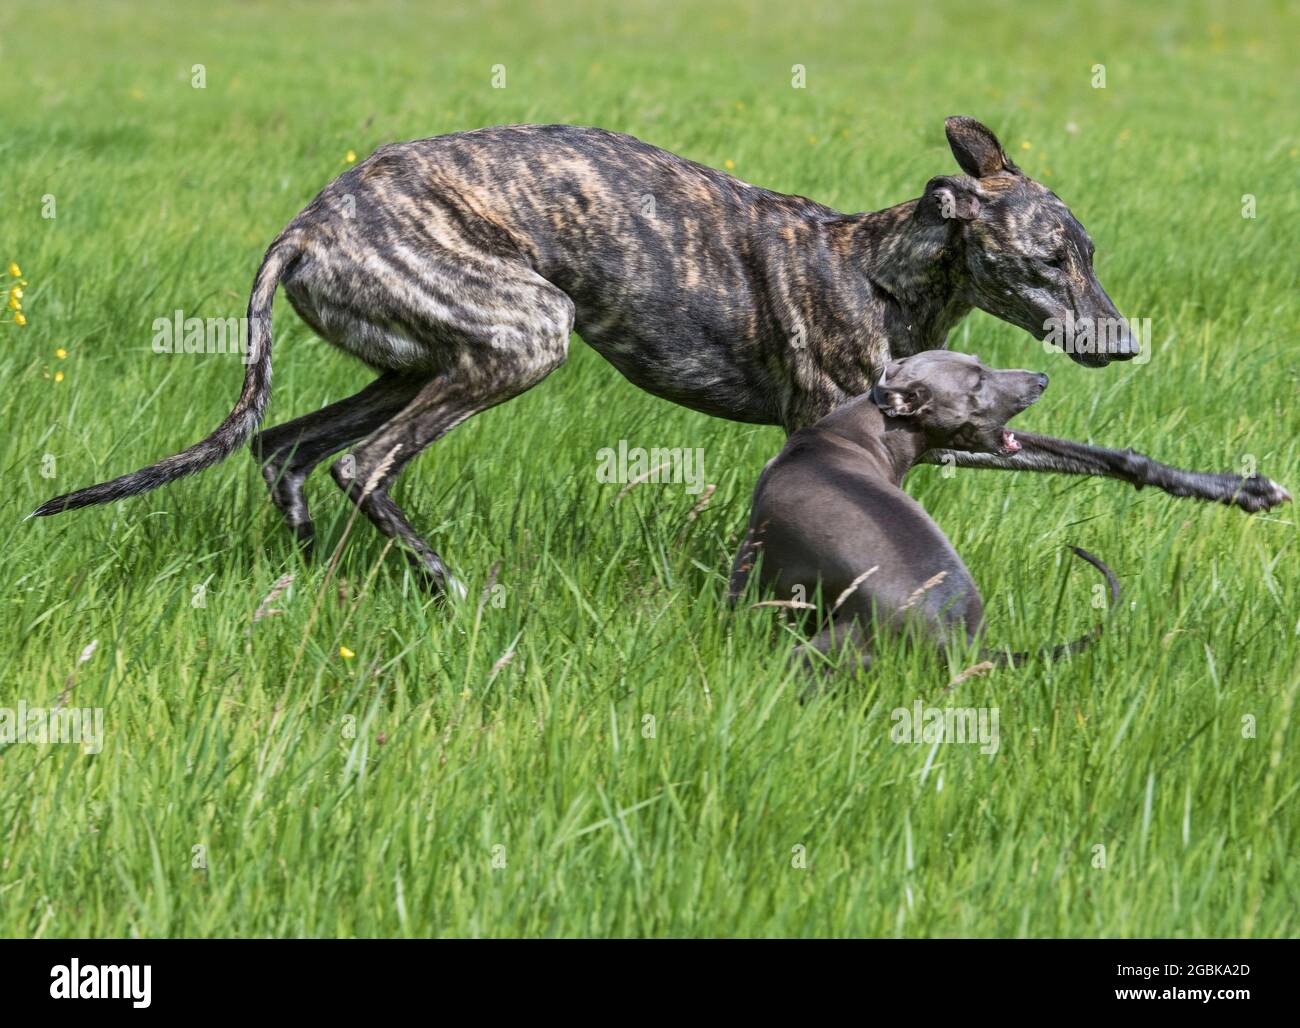 Gestromt Galgo Español / barcino Spanish galgo / Spanischer Windhund und und italienischer Greyhound / Piccolo levriero Italiano laufen auf dem Feld Stockfoto